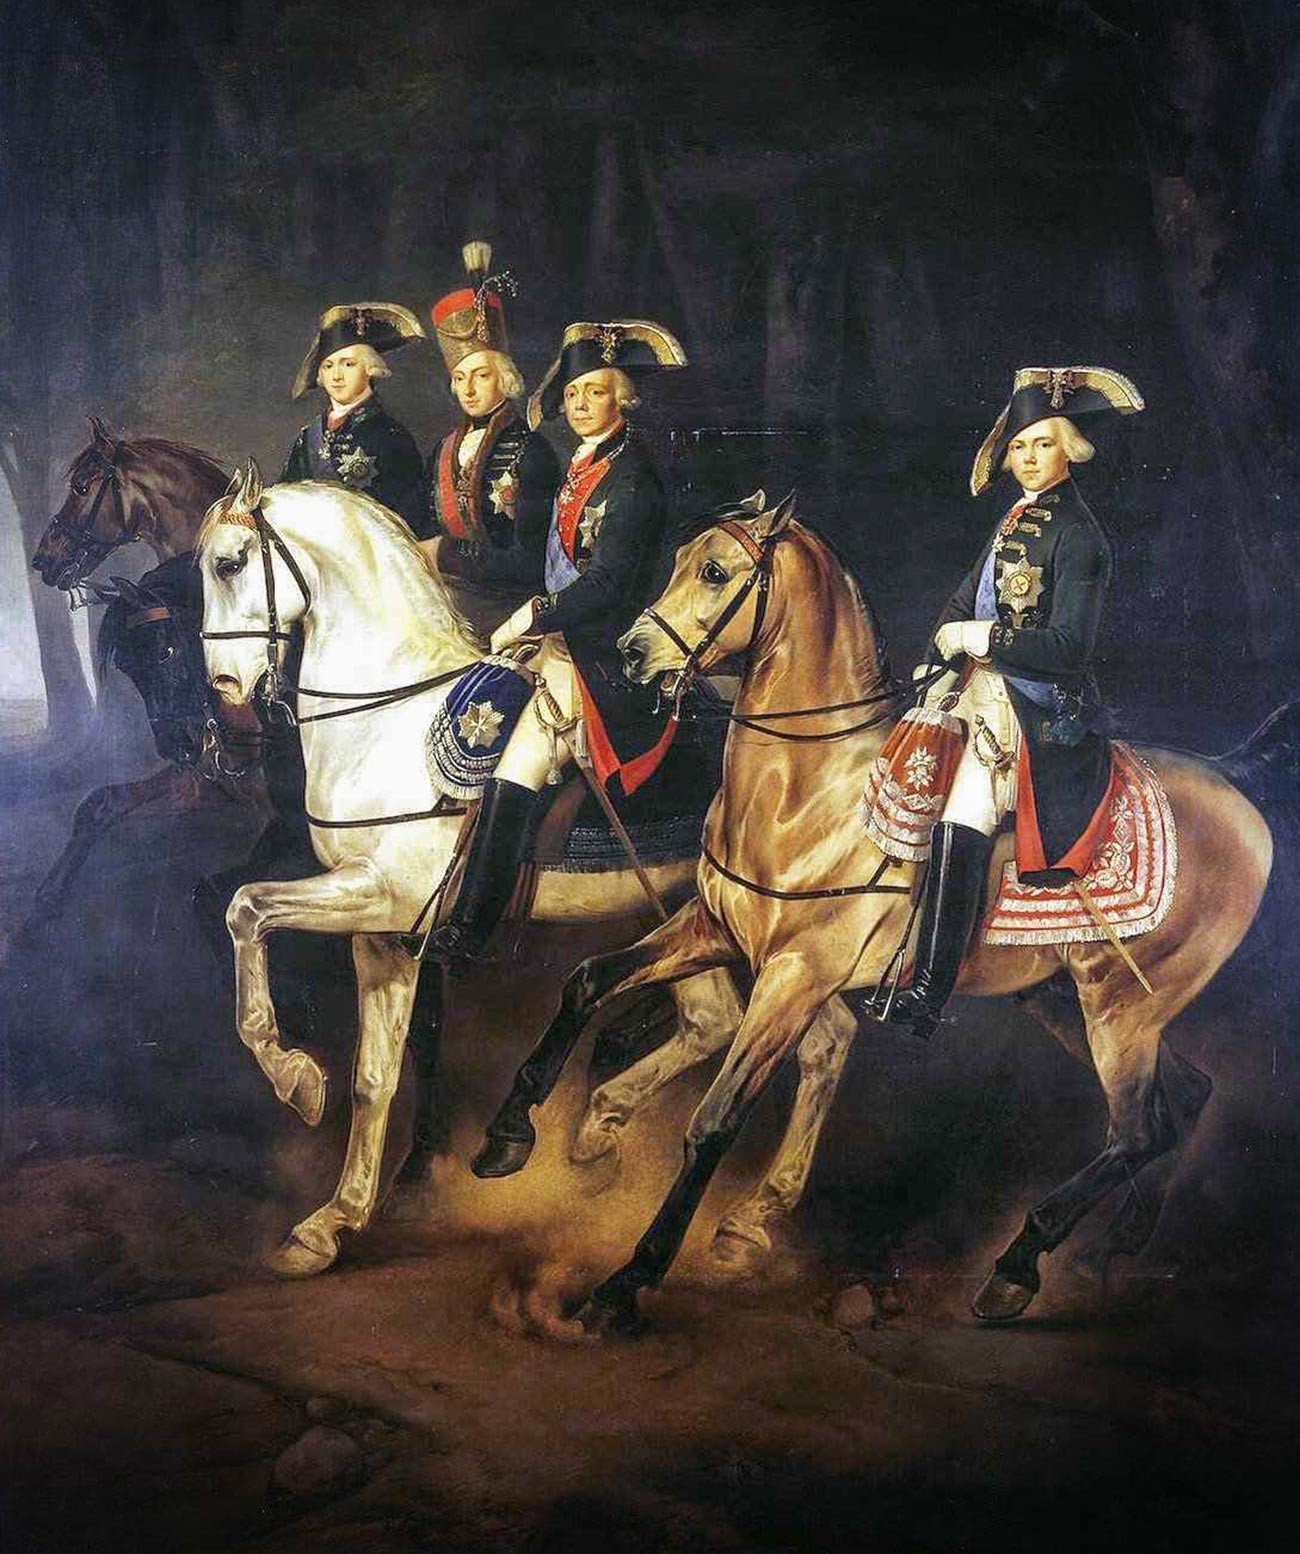 Reiterporträt von Kaiser Paul I. mit seinen Söhnen und dem Pfalzgrafen Joseph von Ungarn